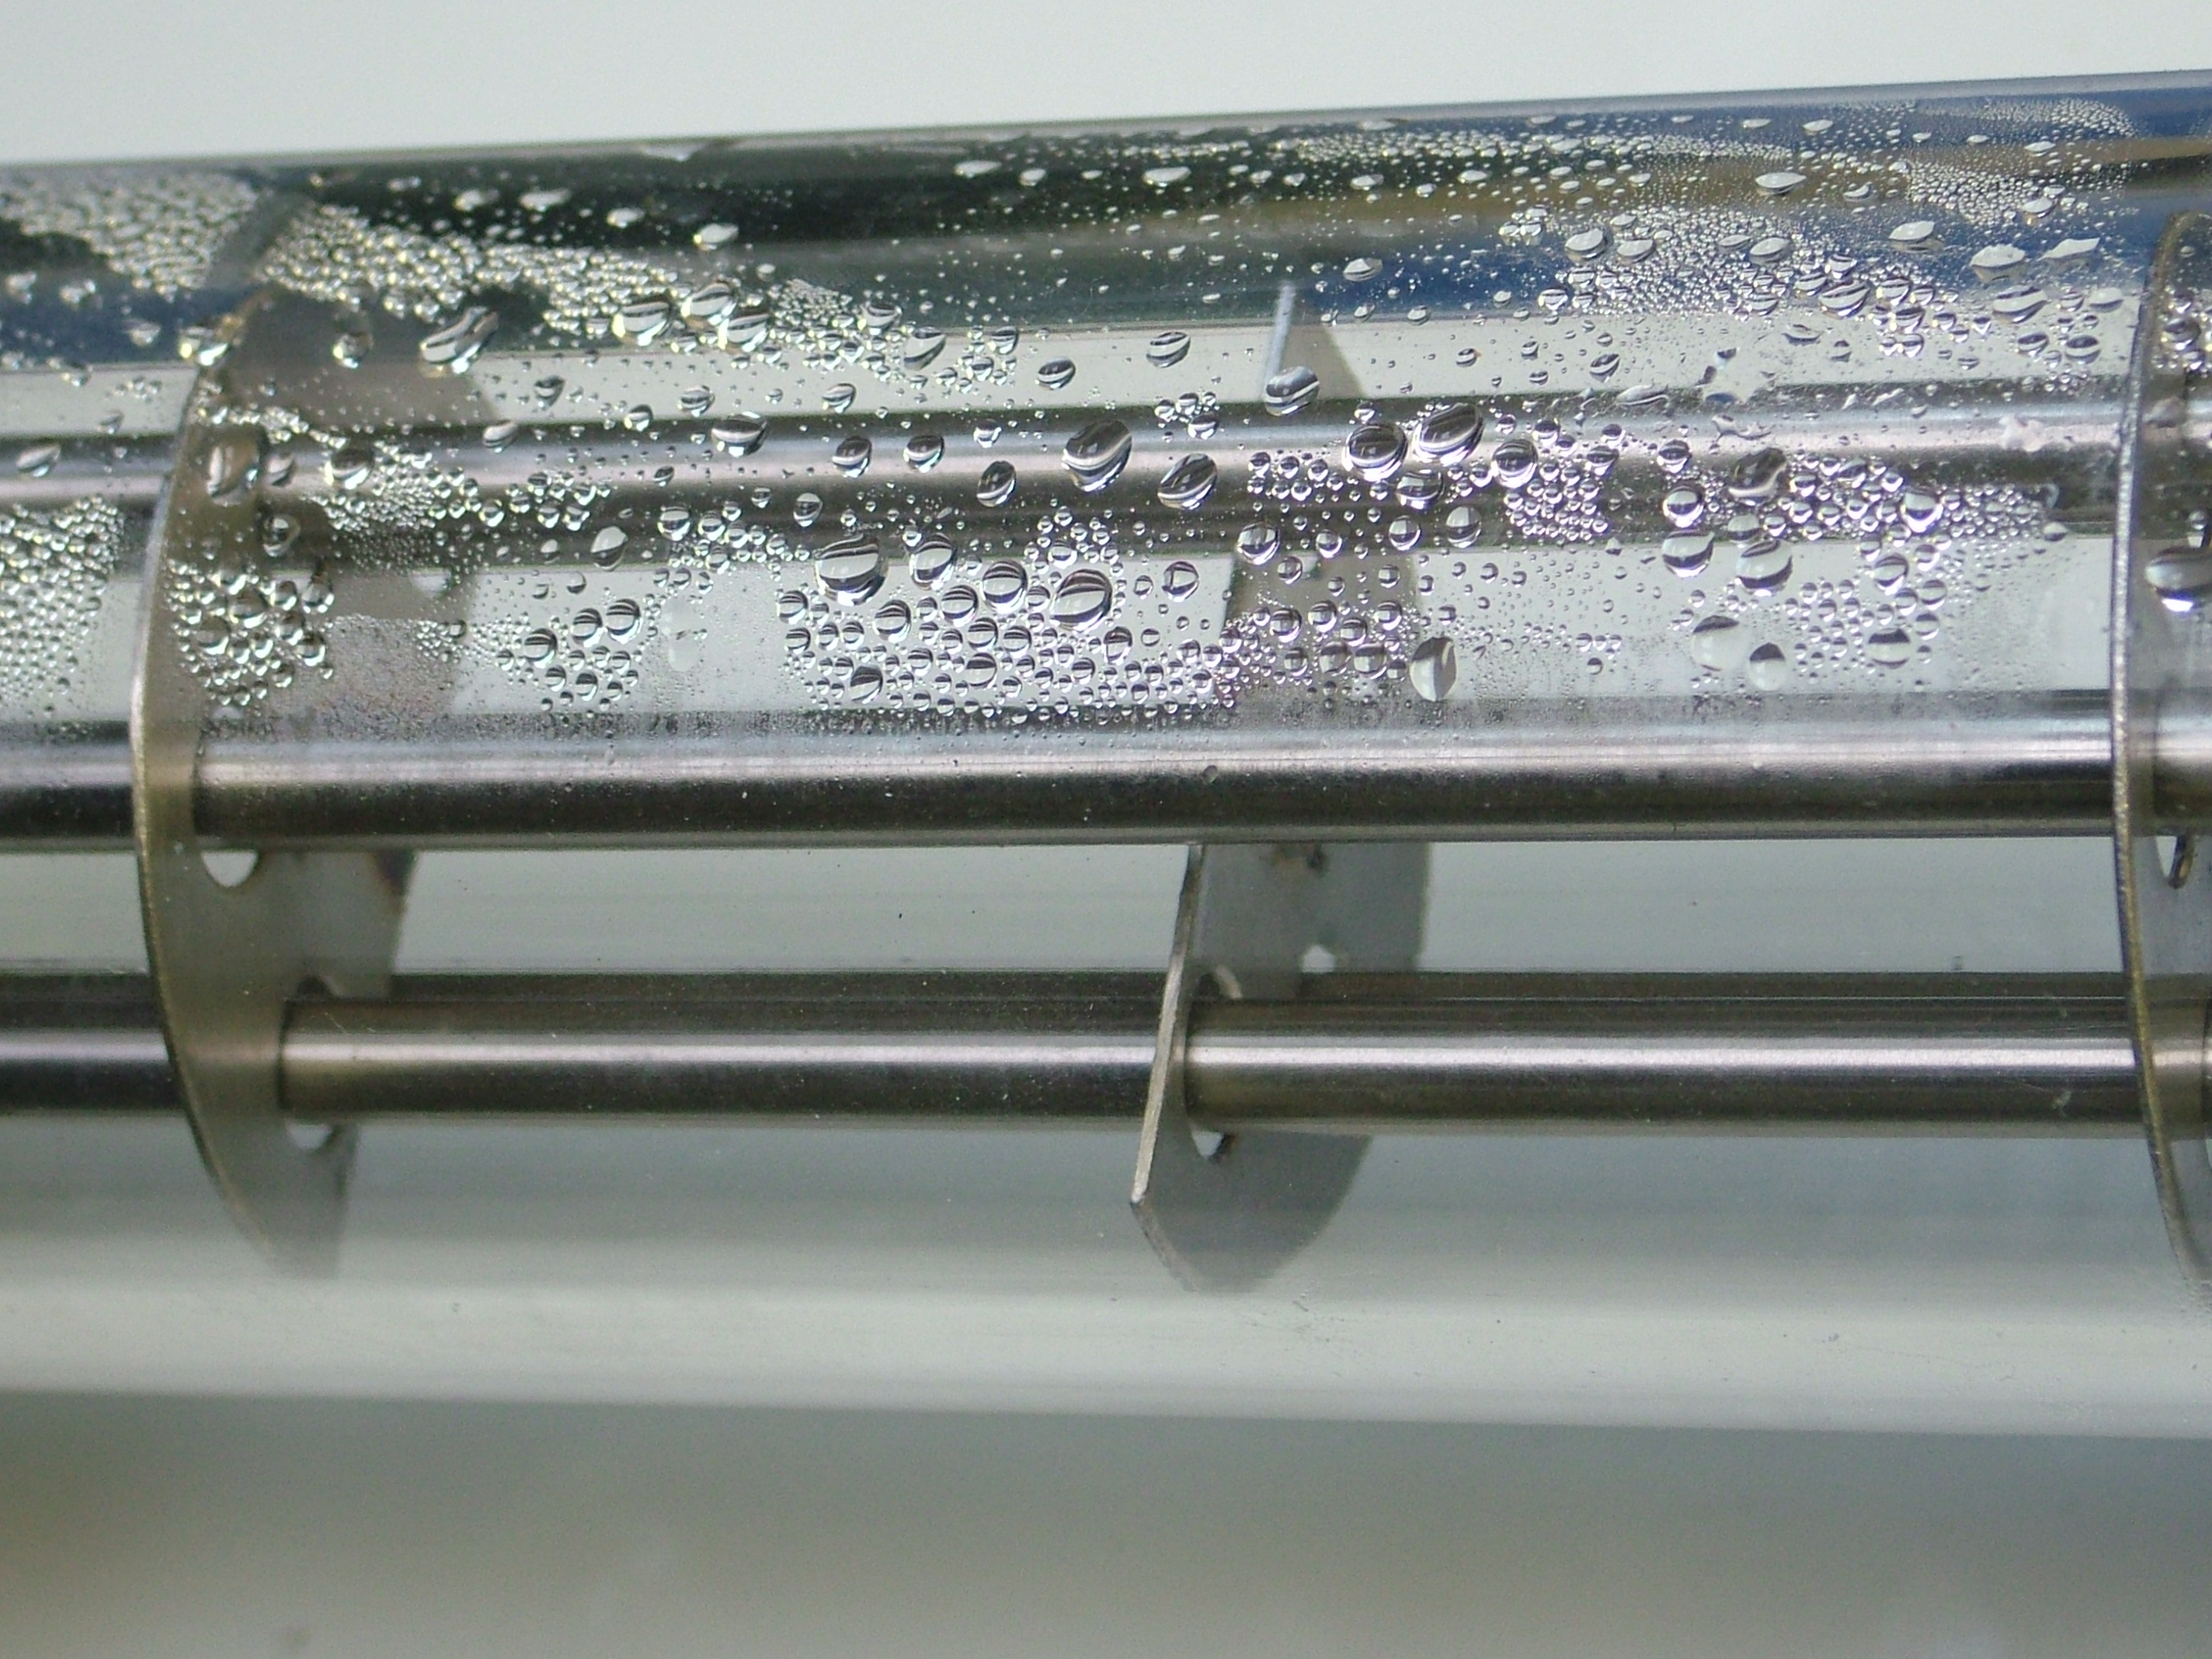 Close up of TecQuipment's Heat Exchanger